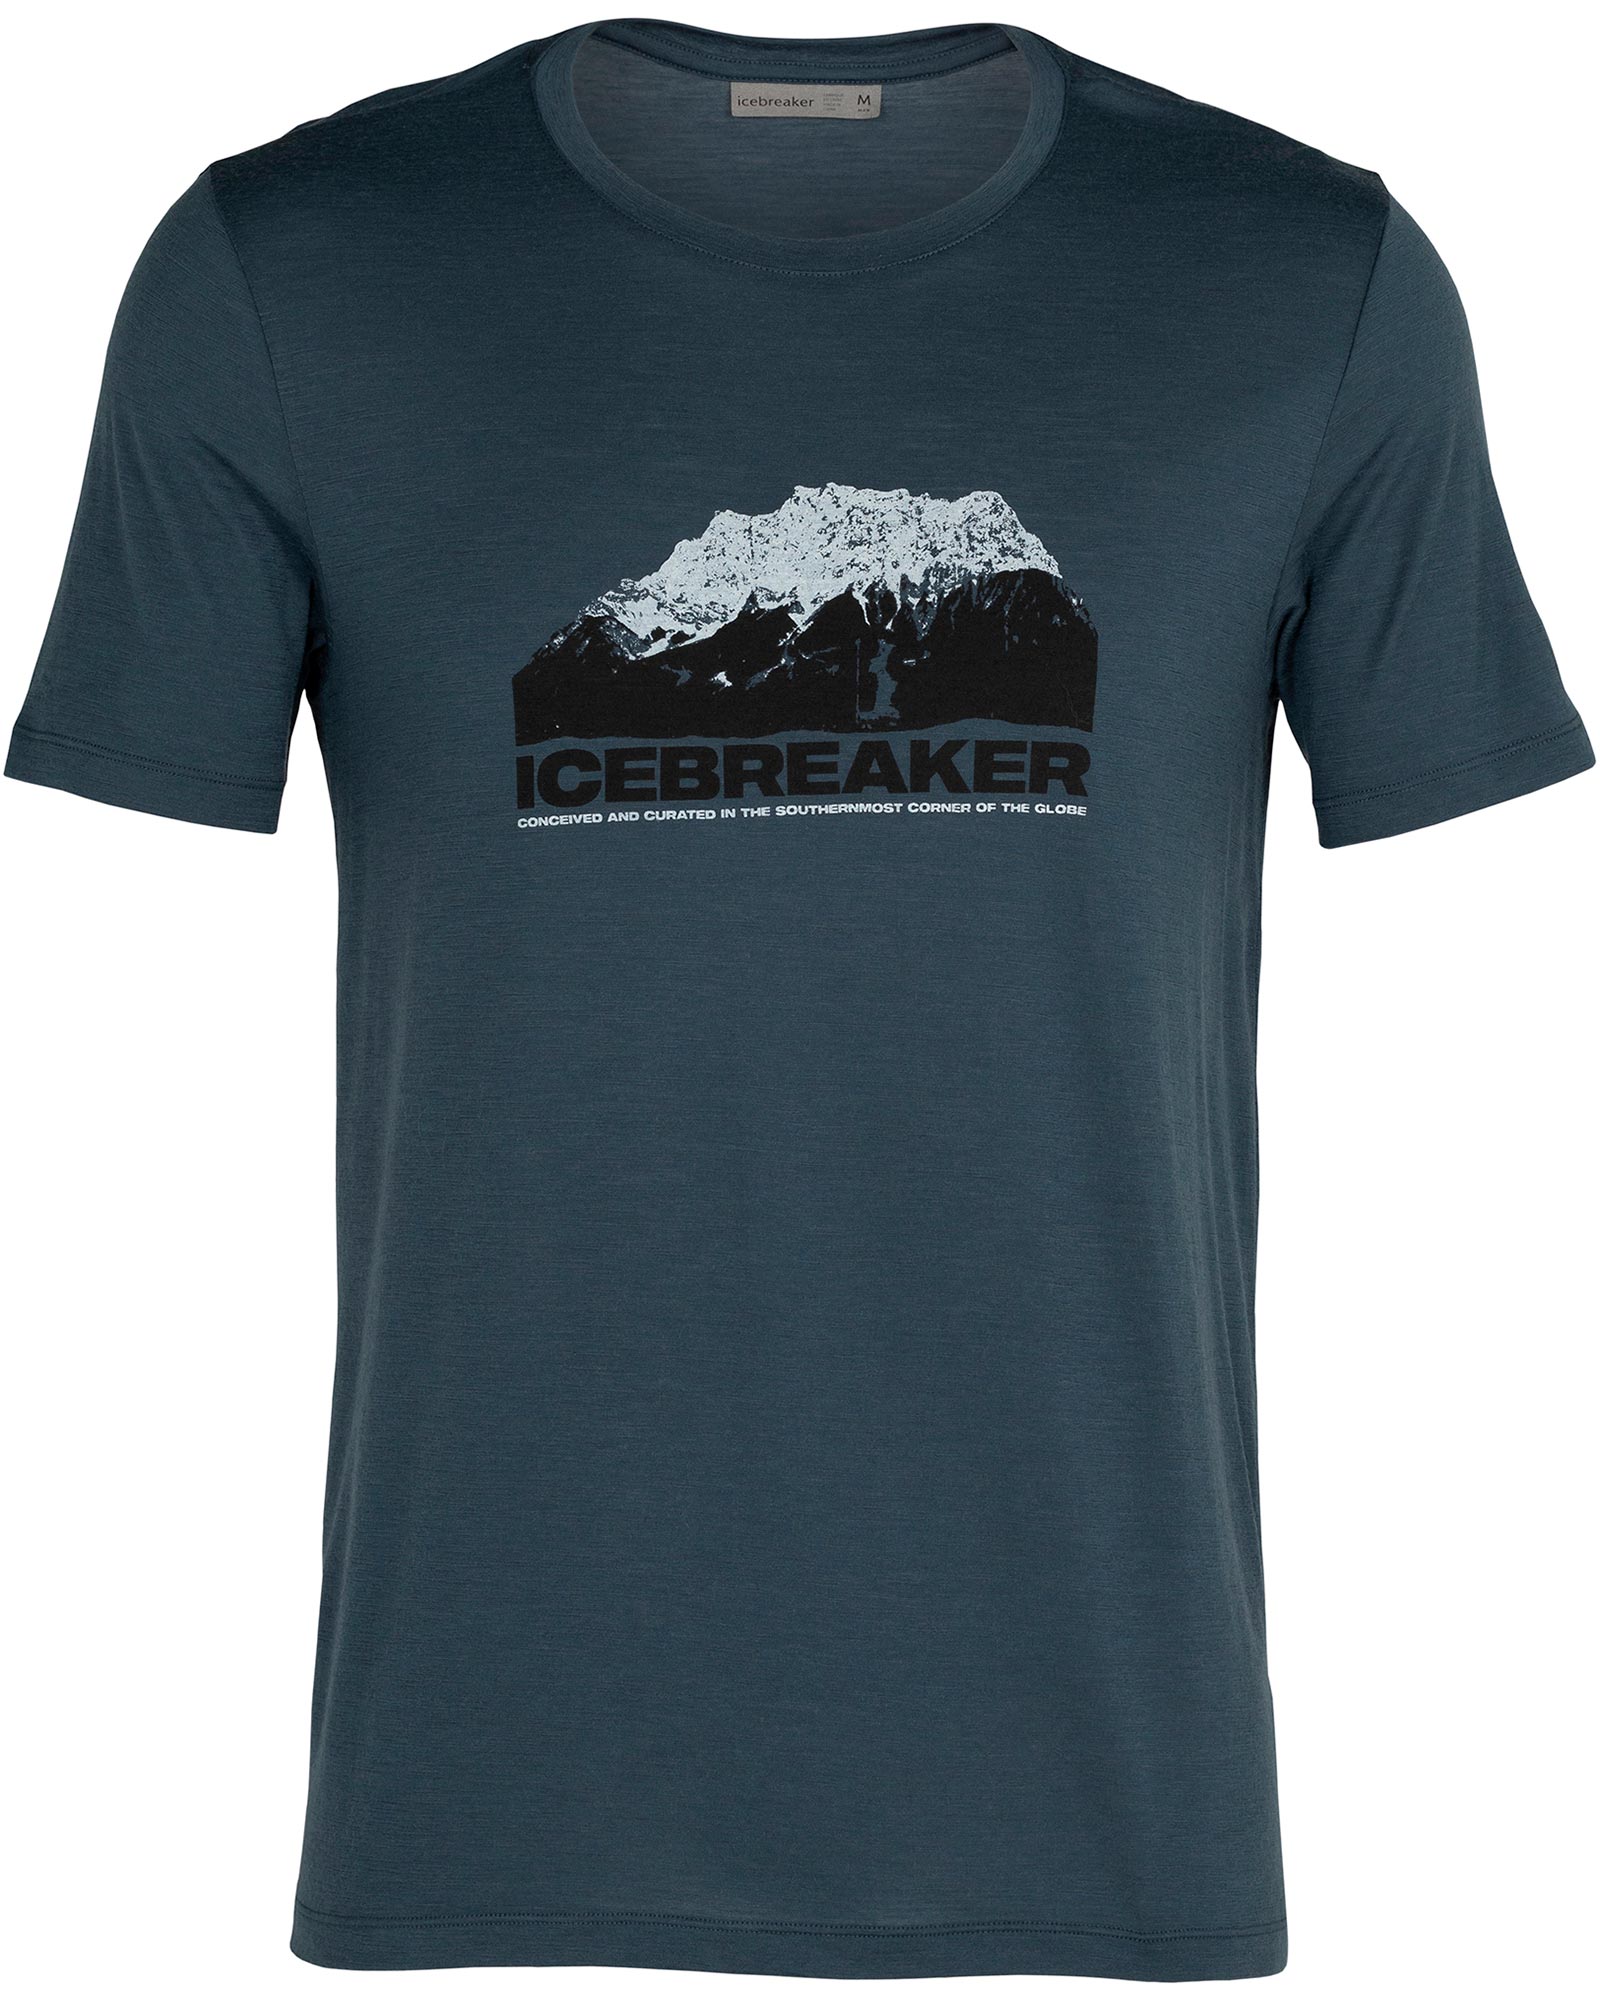 icebreaker Merino Tech Lite Graphic Men’s Crew T Shirt - Icebreaker Mountain/Serene Blue S